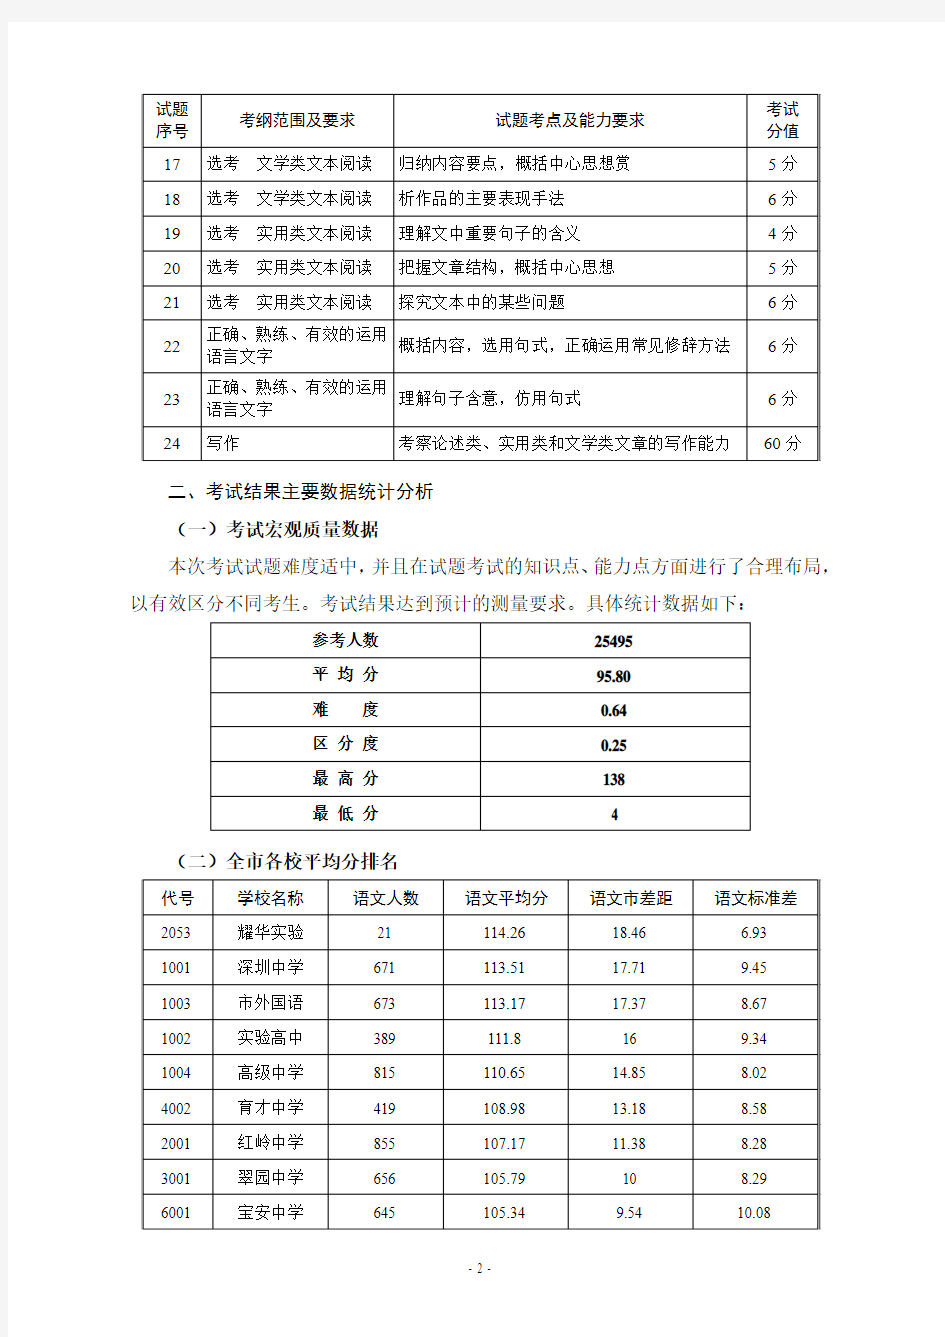 深圳市2011年高三年级第一次调研考试语文学科 考试分析总结报告